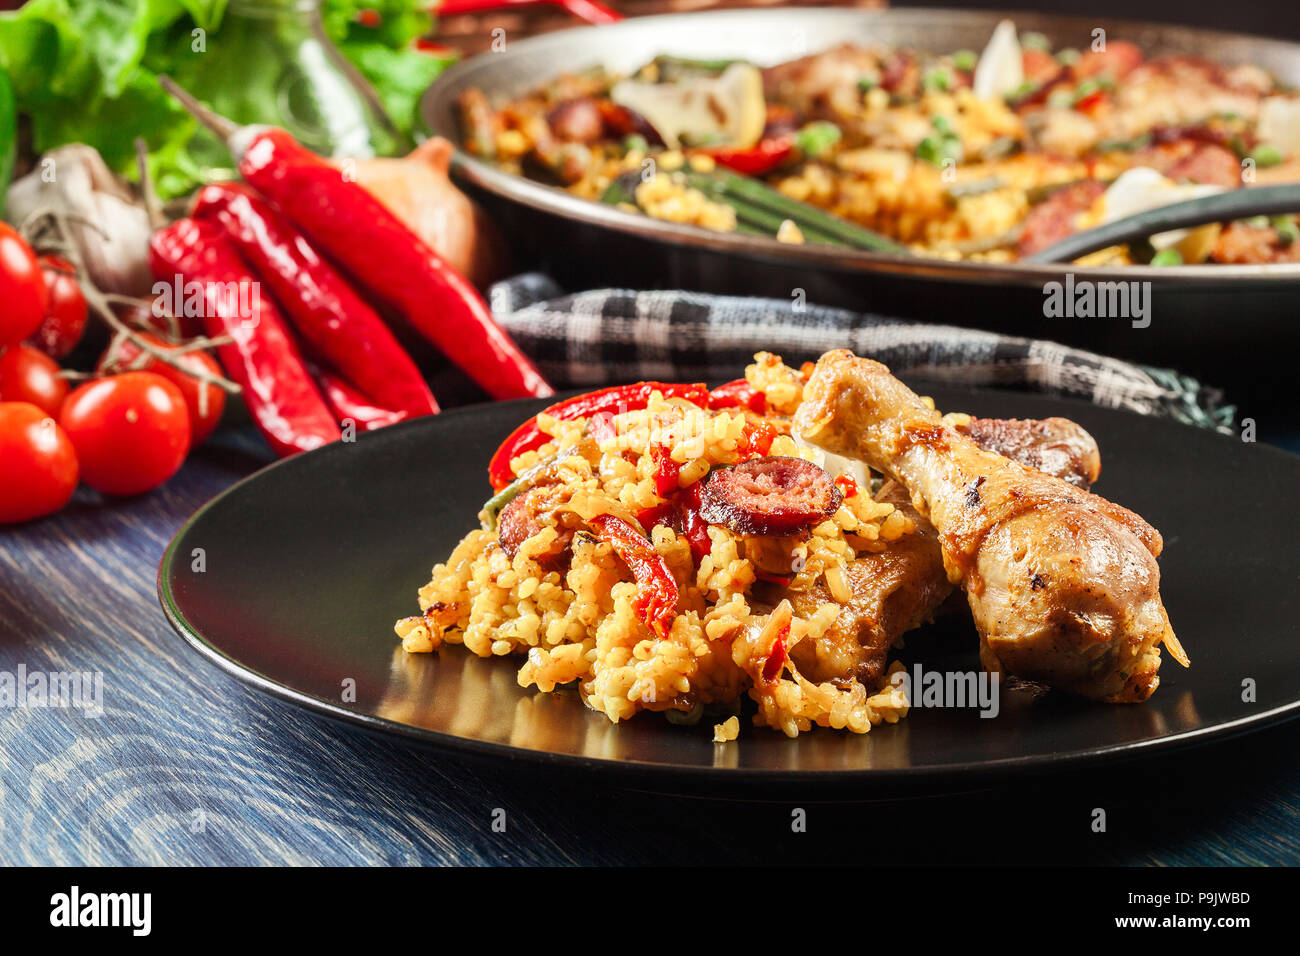 La paella traditionnelle avec des cuisses de poulet, saucisses chorizo et légumes servi sur la plaque noire. La cuisine espagnole Banque D'Images